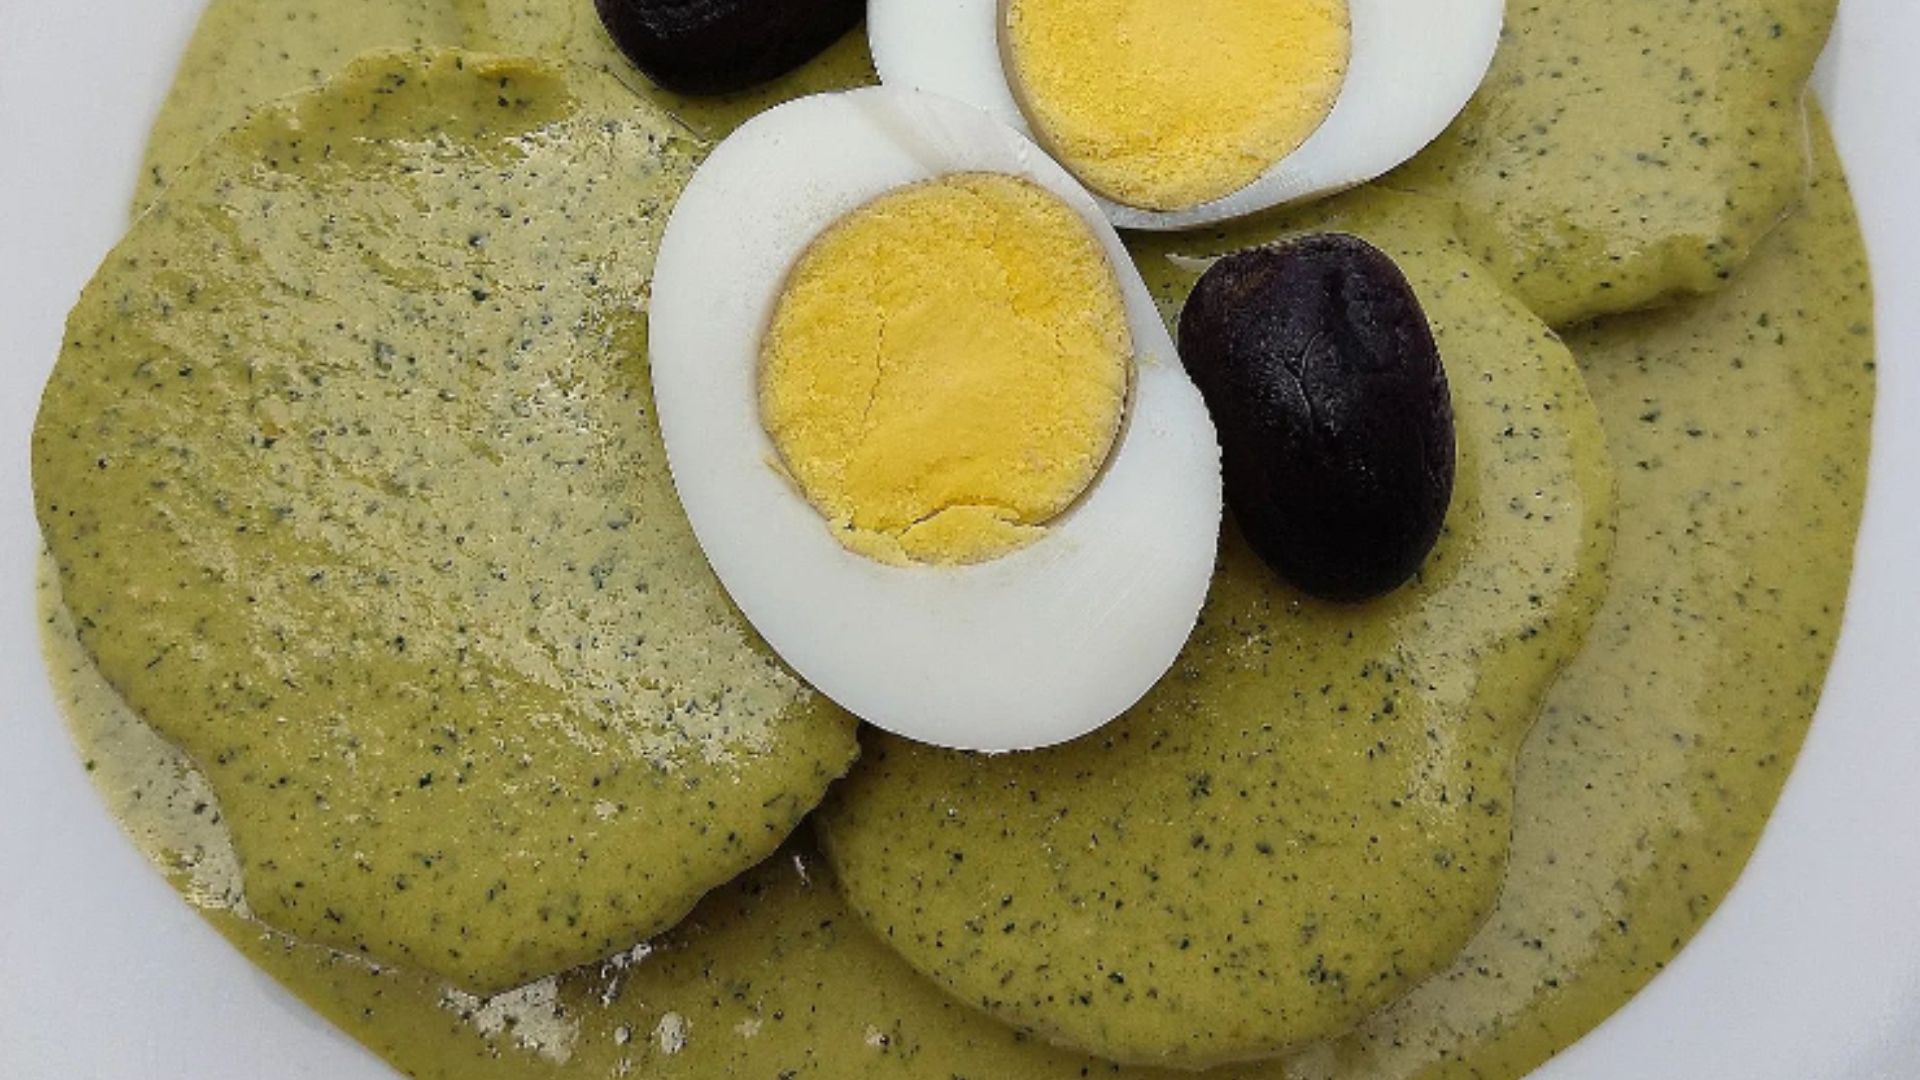 Historia de la ocopa: origen de uno de los platos de entrada más solicitados en el Perú